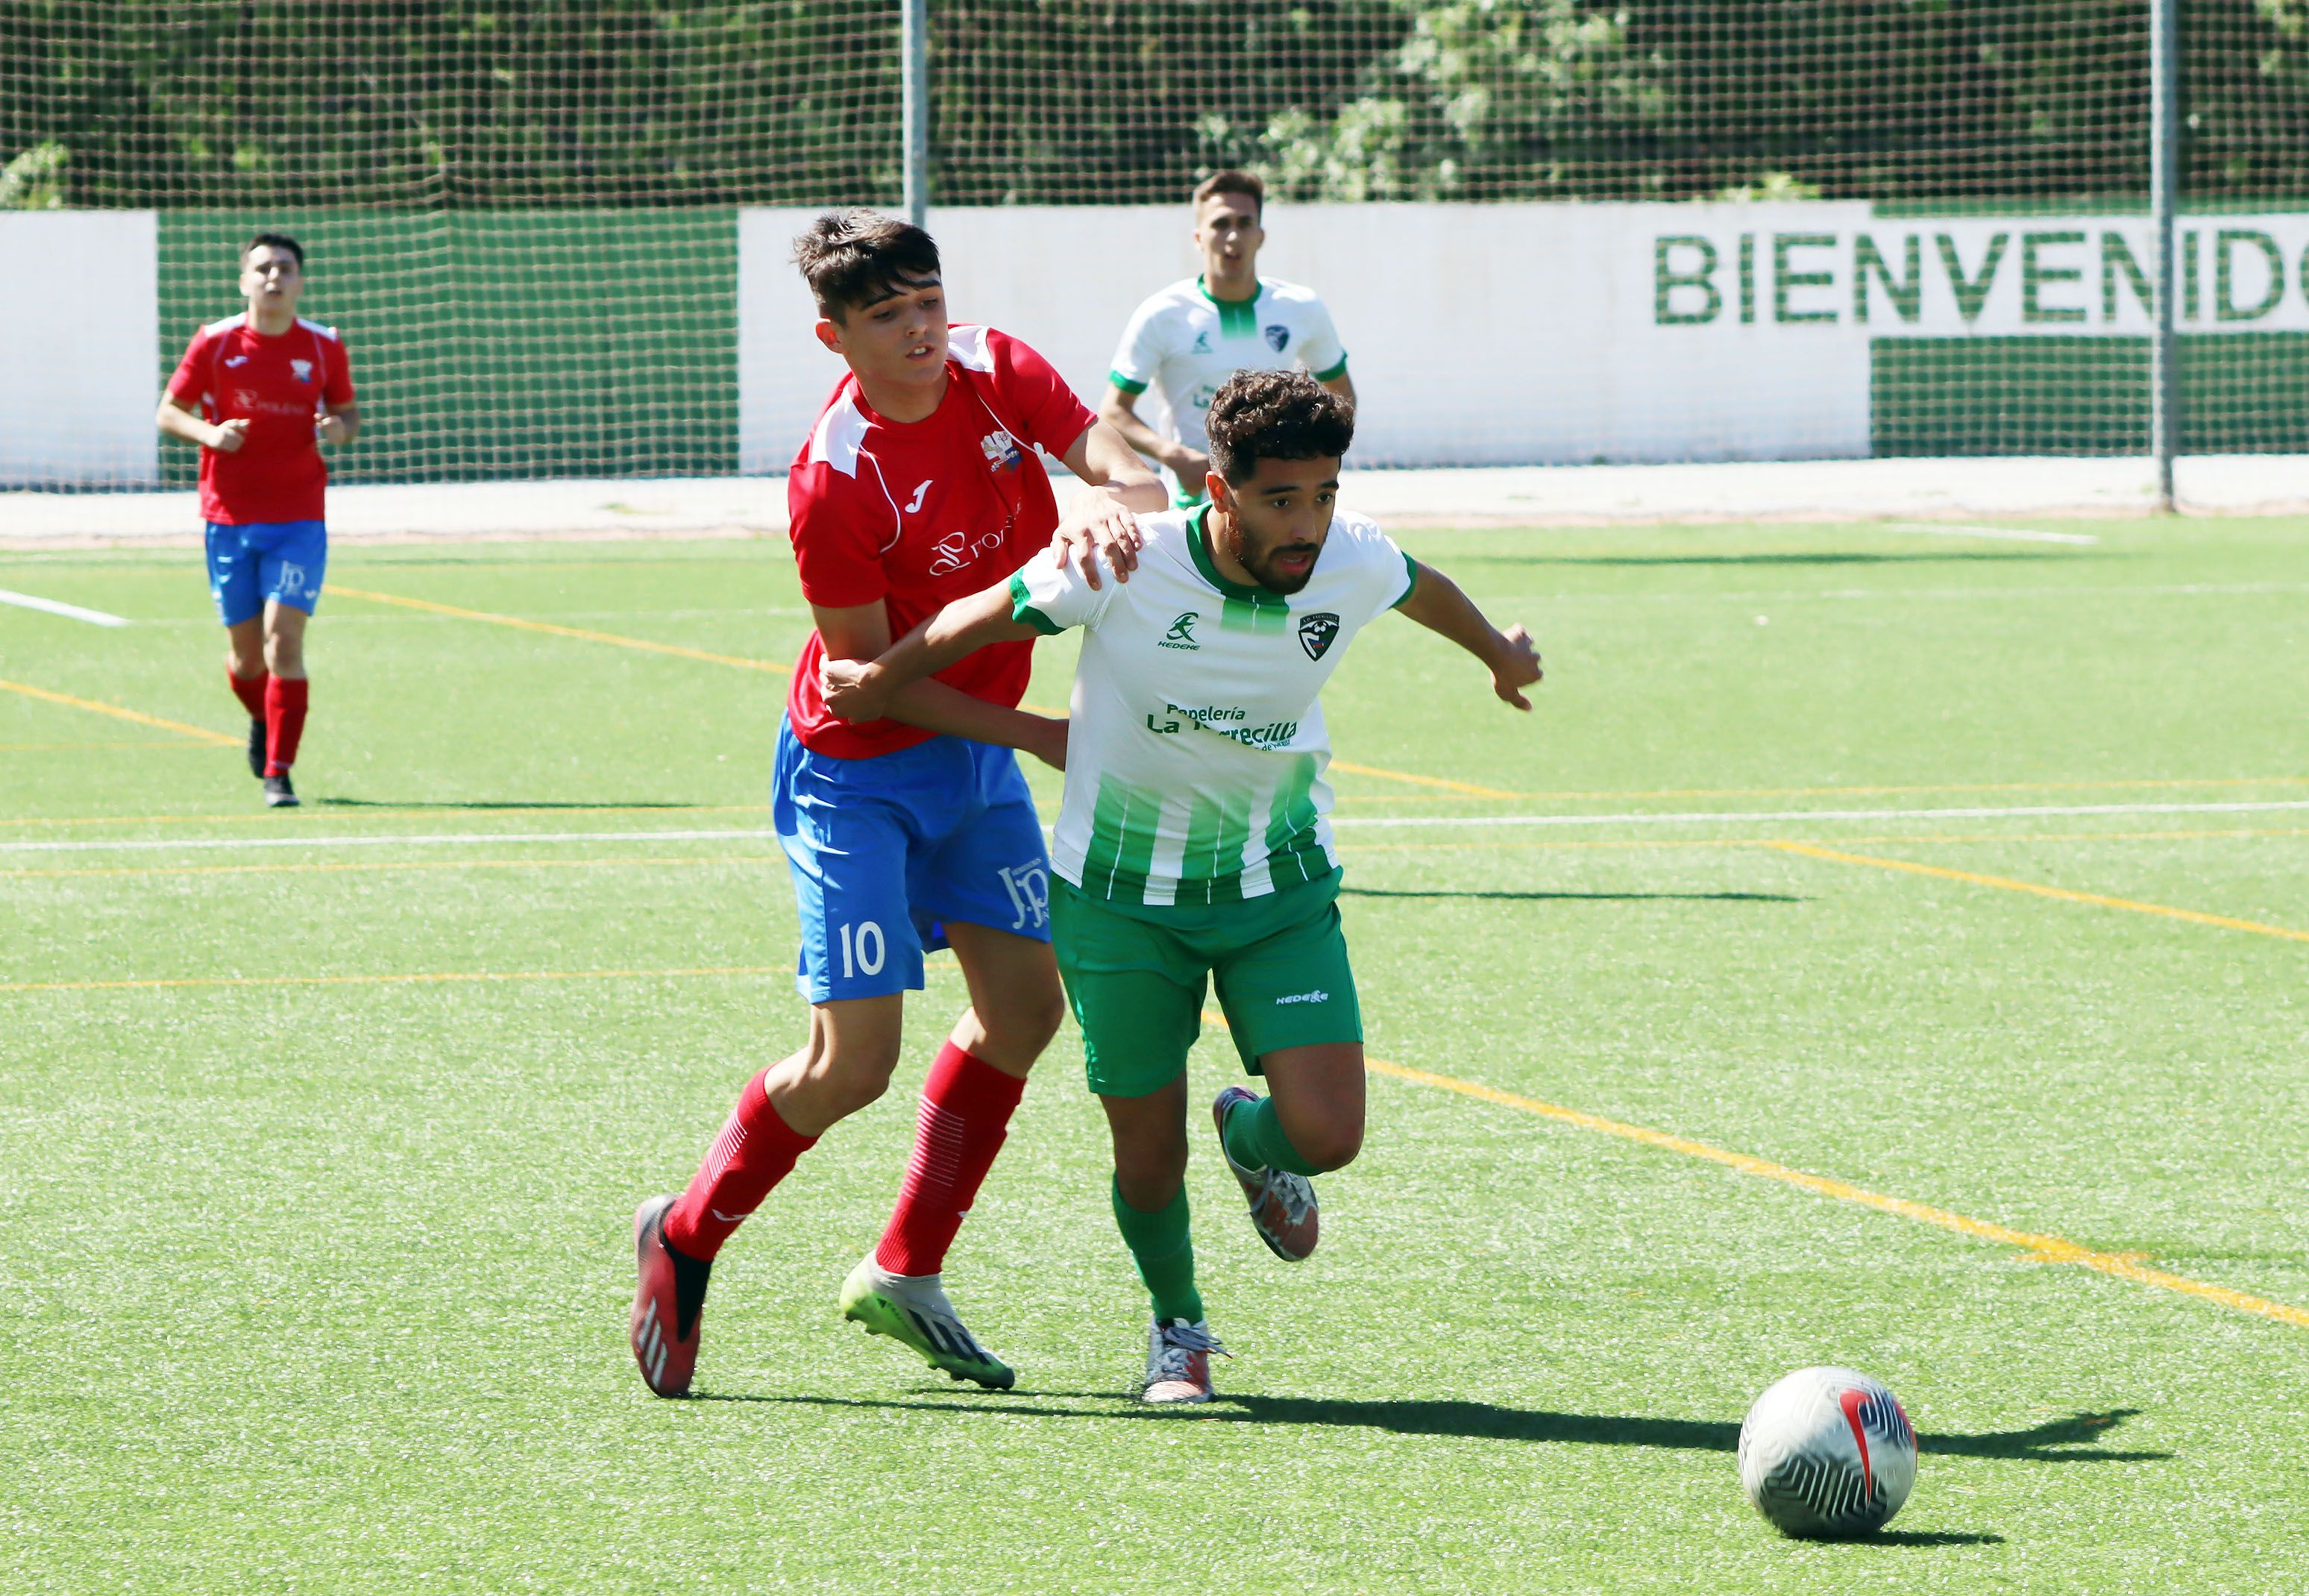 El taraguillero Nico Amaya trata de zafarse de Aníbal, del Ubrique CF, en un lance del partido/Foto: AXEL S.C.